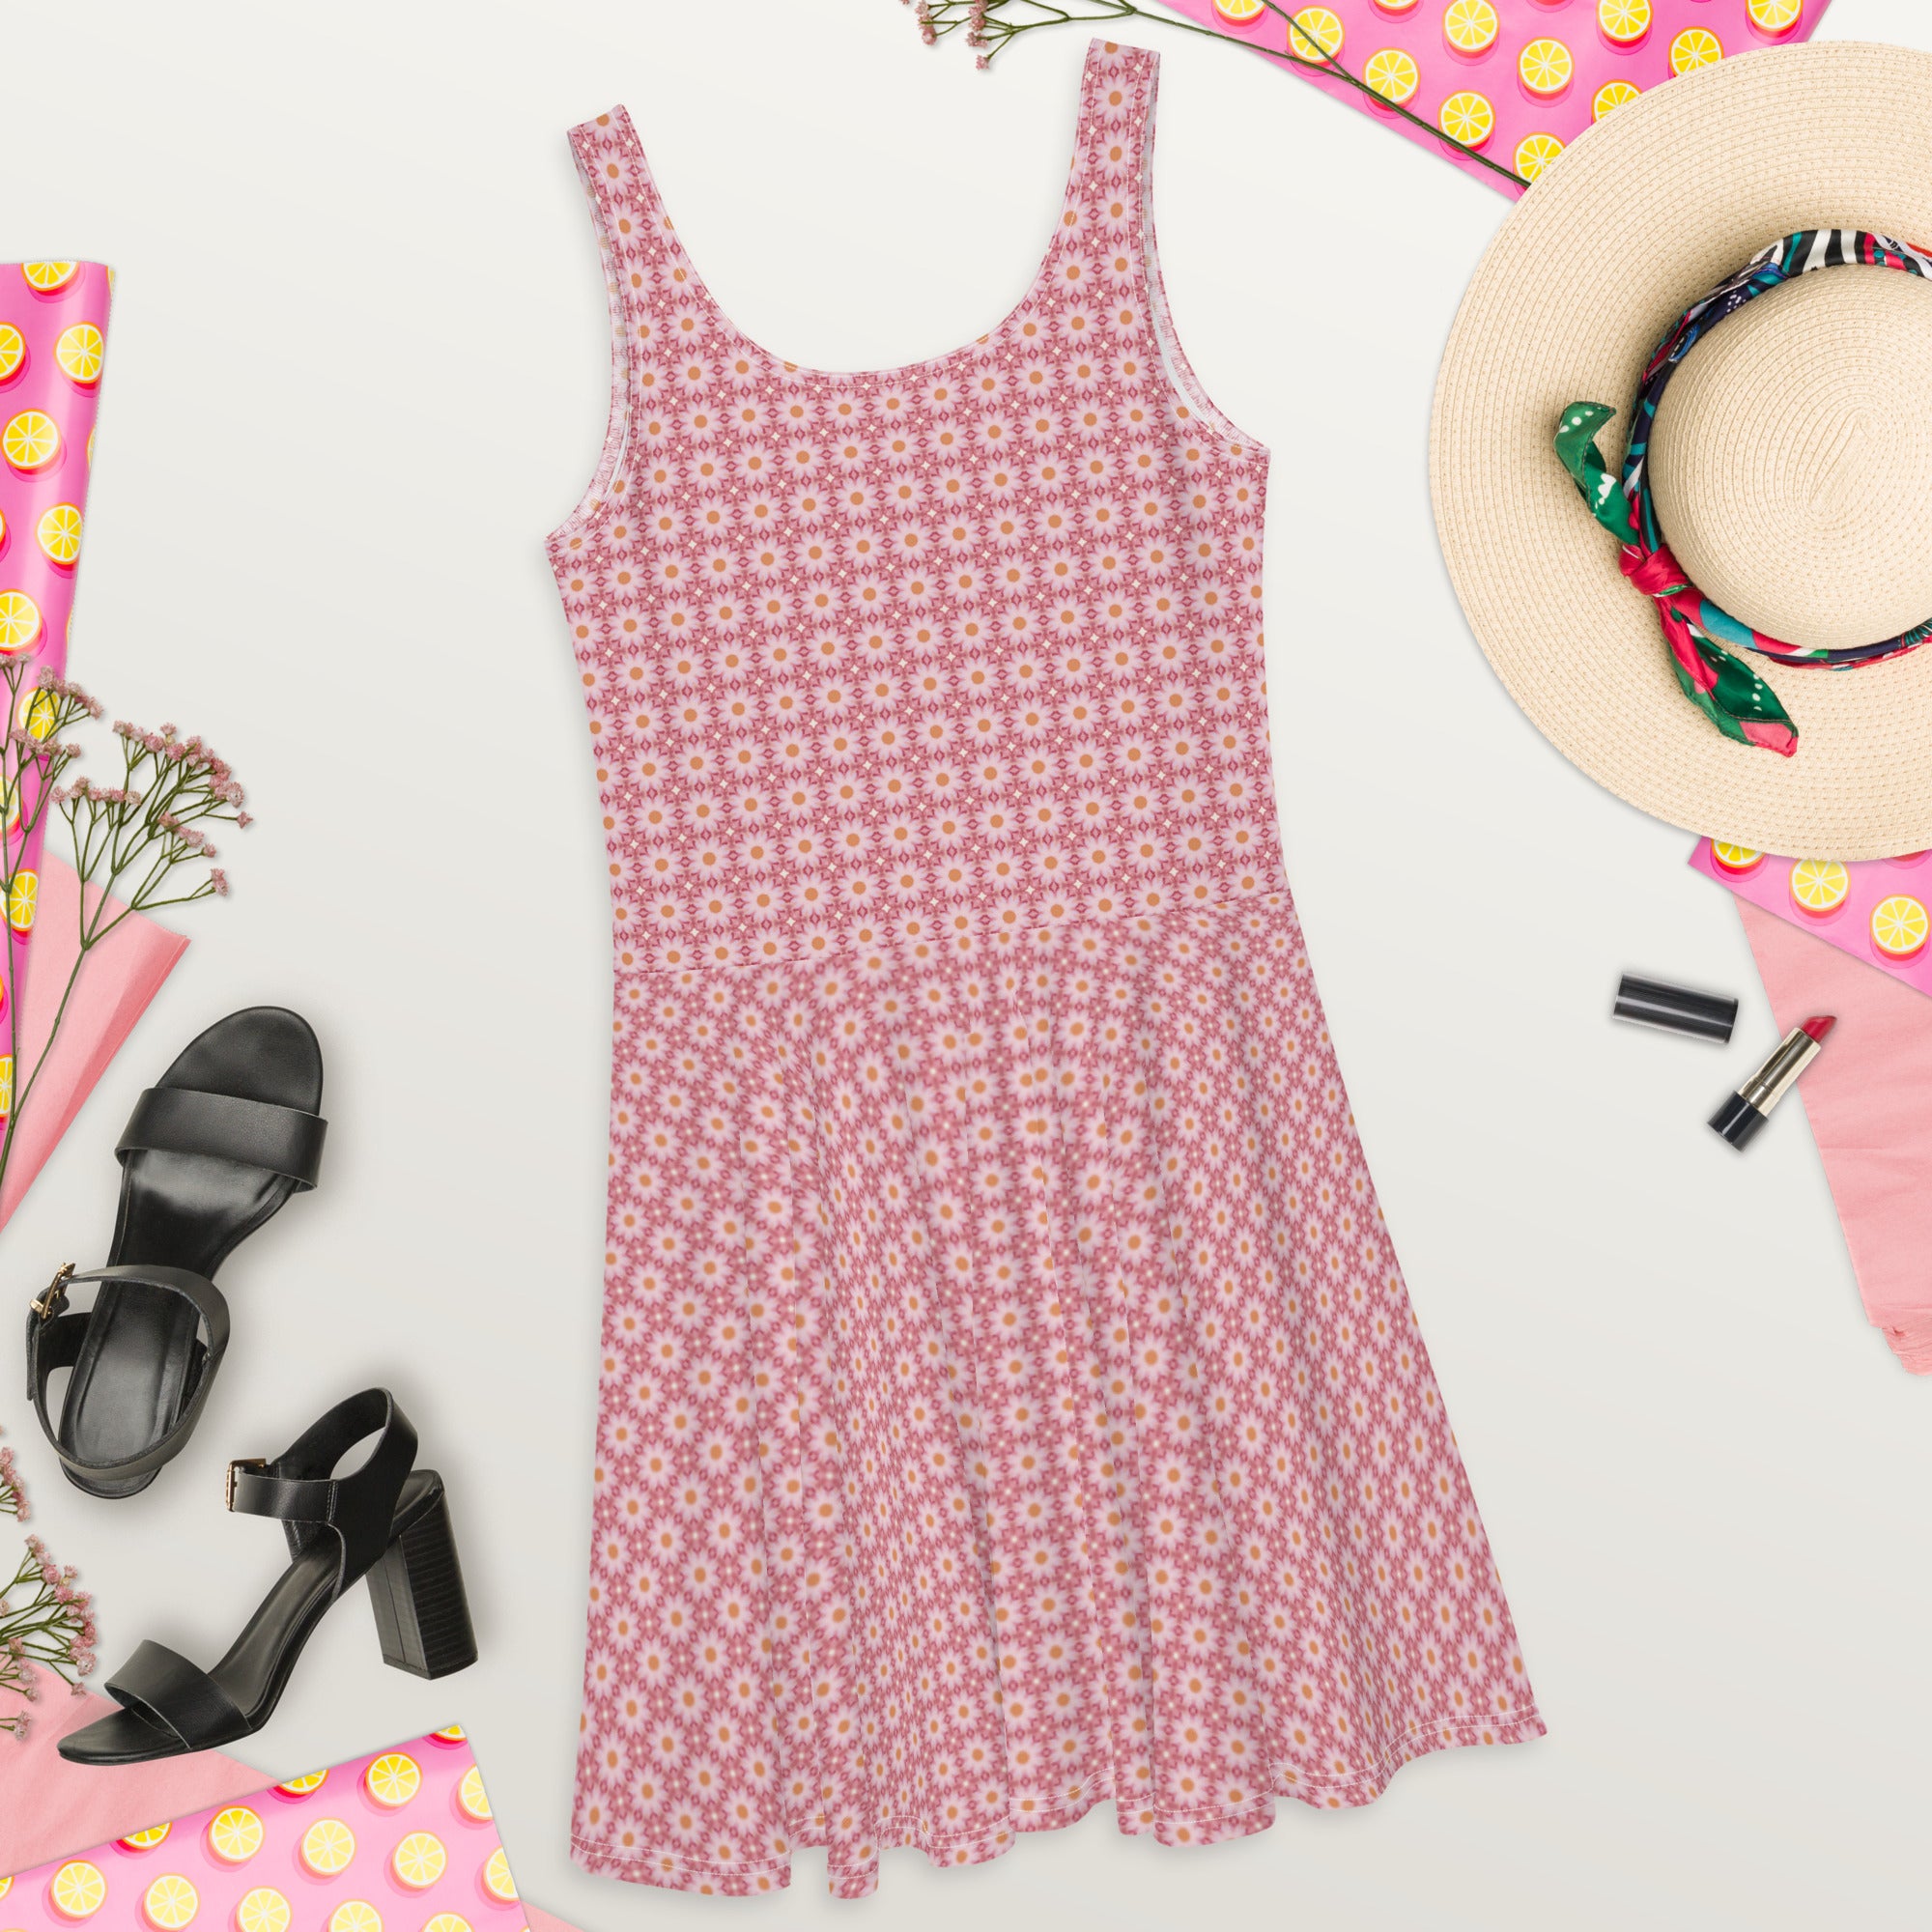 Pink Roses patterned, Skater Dress, by Sensus Studio Design